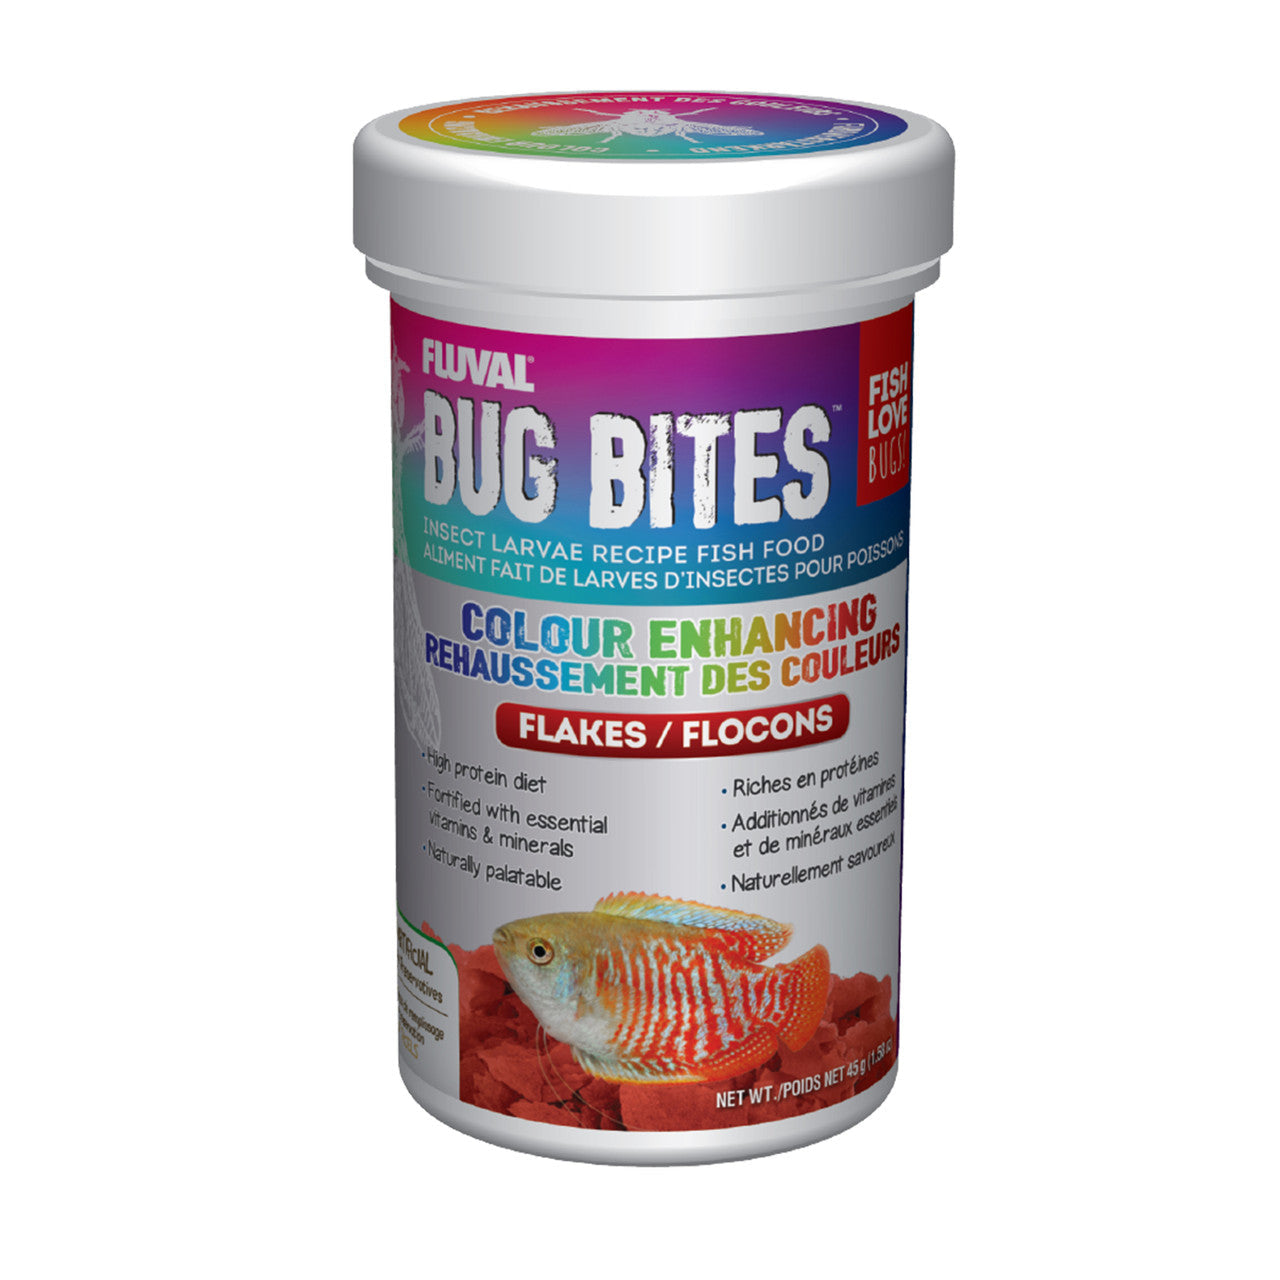 Fluval Bug Bites Color Enhancing Flakes 1.59 oz 015561173476